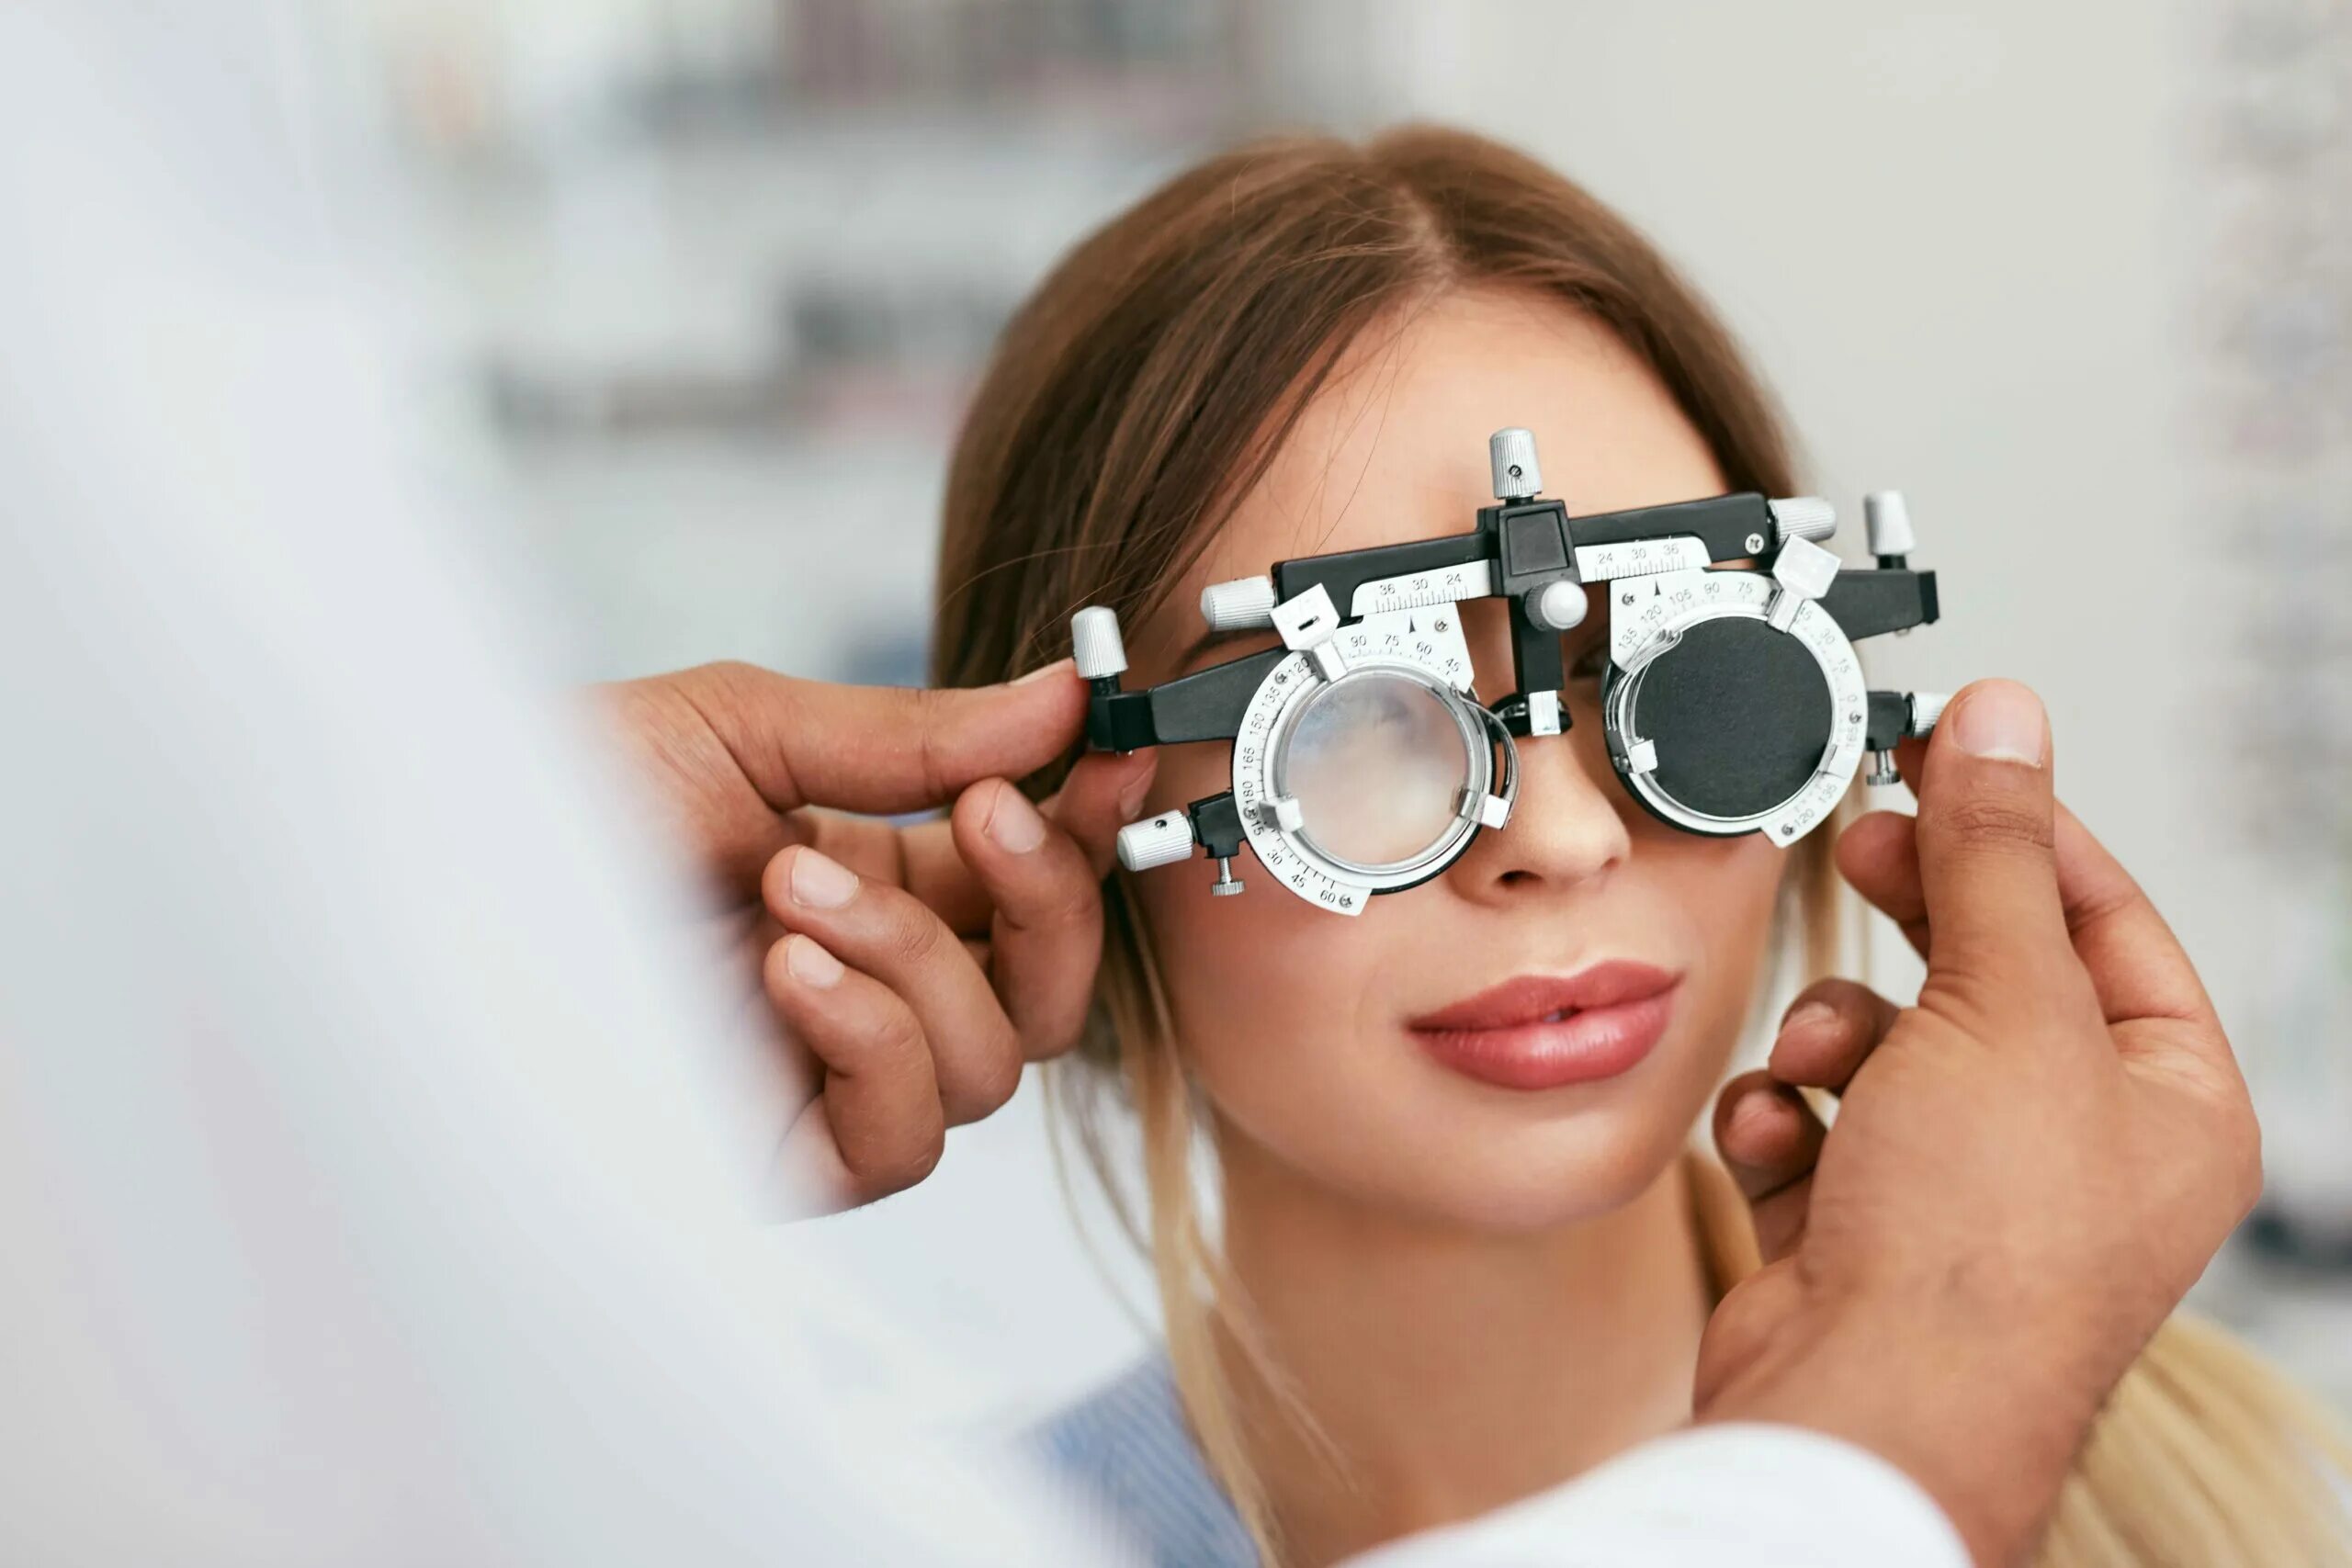 Очки окулиста. Оптика в очках. Офтальмология зрение очки. Очки для зрения окулист. Врач зрение очки